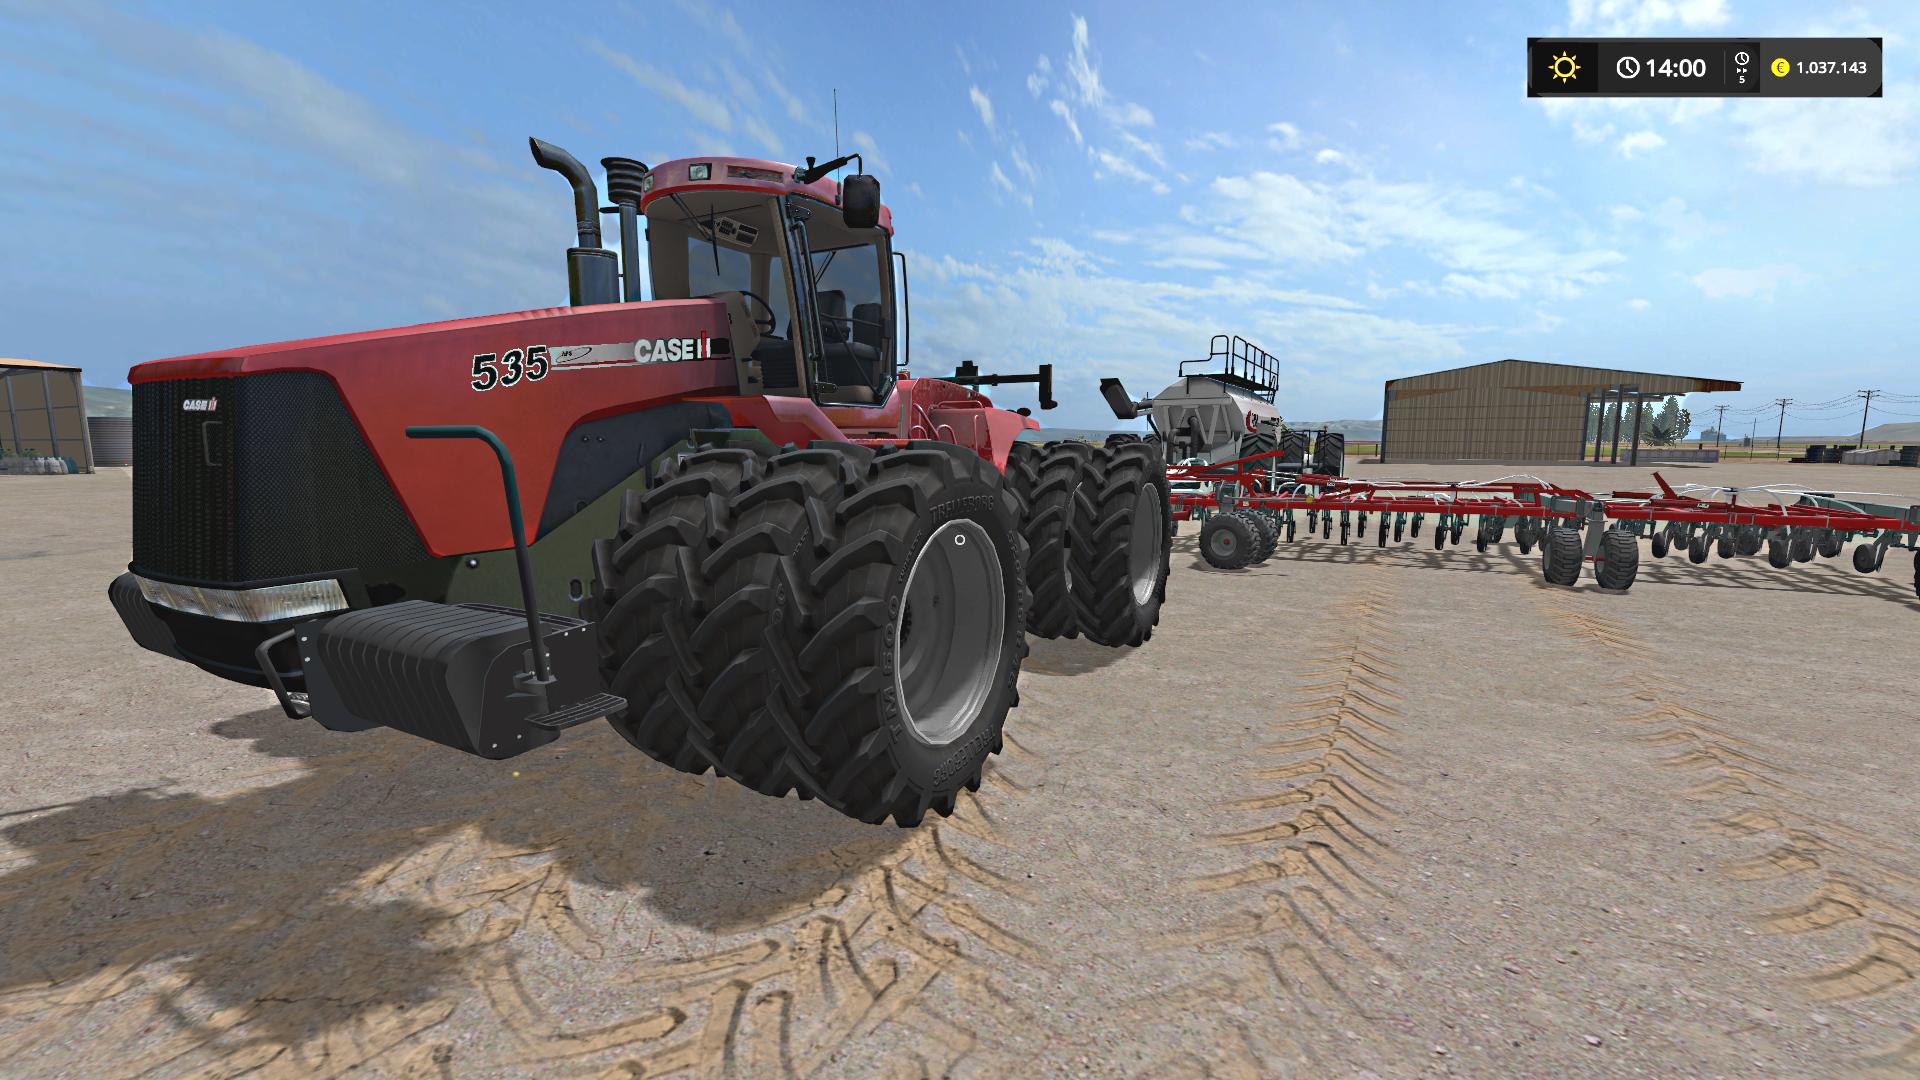 Case Ih Steiger 535 Beta Fs17 Farming Simulator 17 Mod Fs 2017 Mod 9907